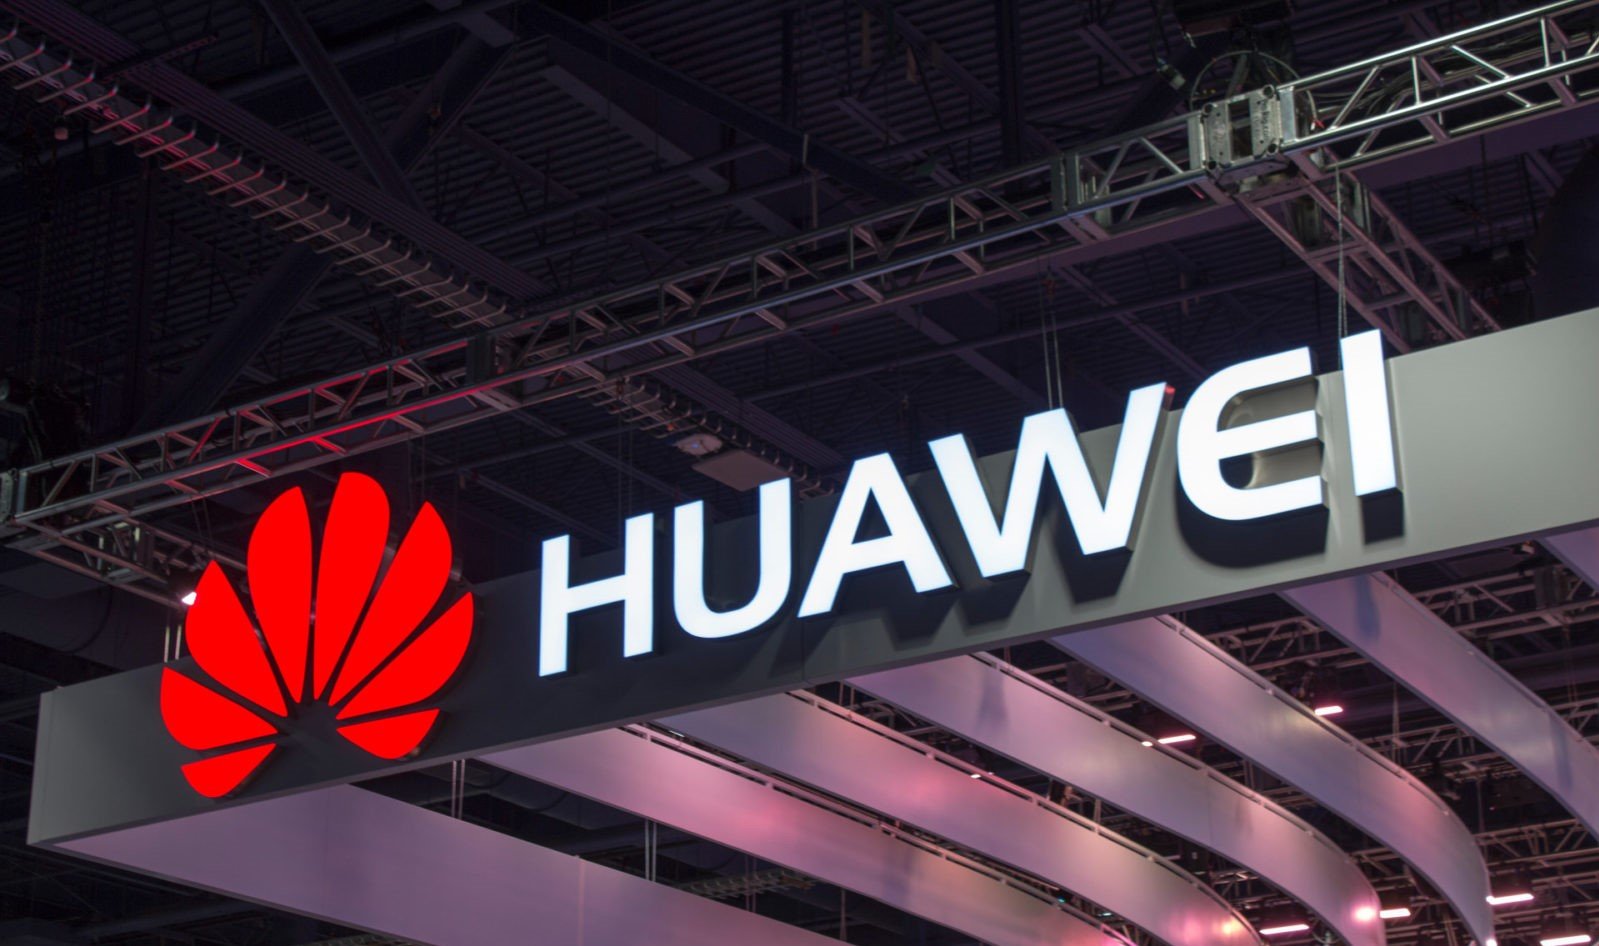 Huawei kommer att erbjuda kraftfulla processorer och moderkort för stationära datorer men inte kompletta datorsystem, bekräftar företaget